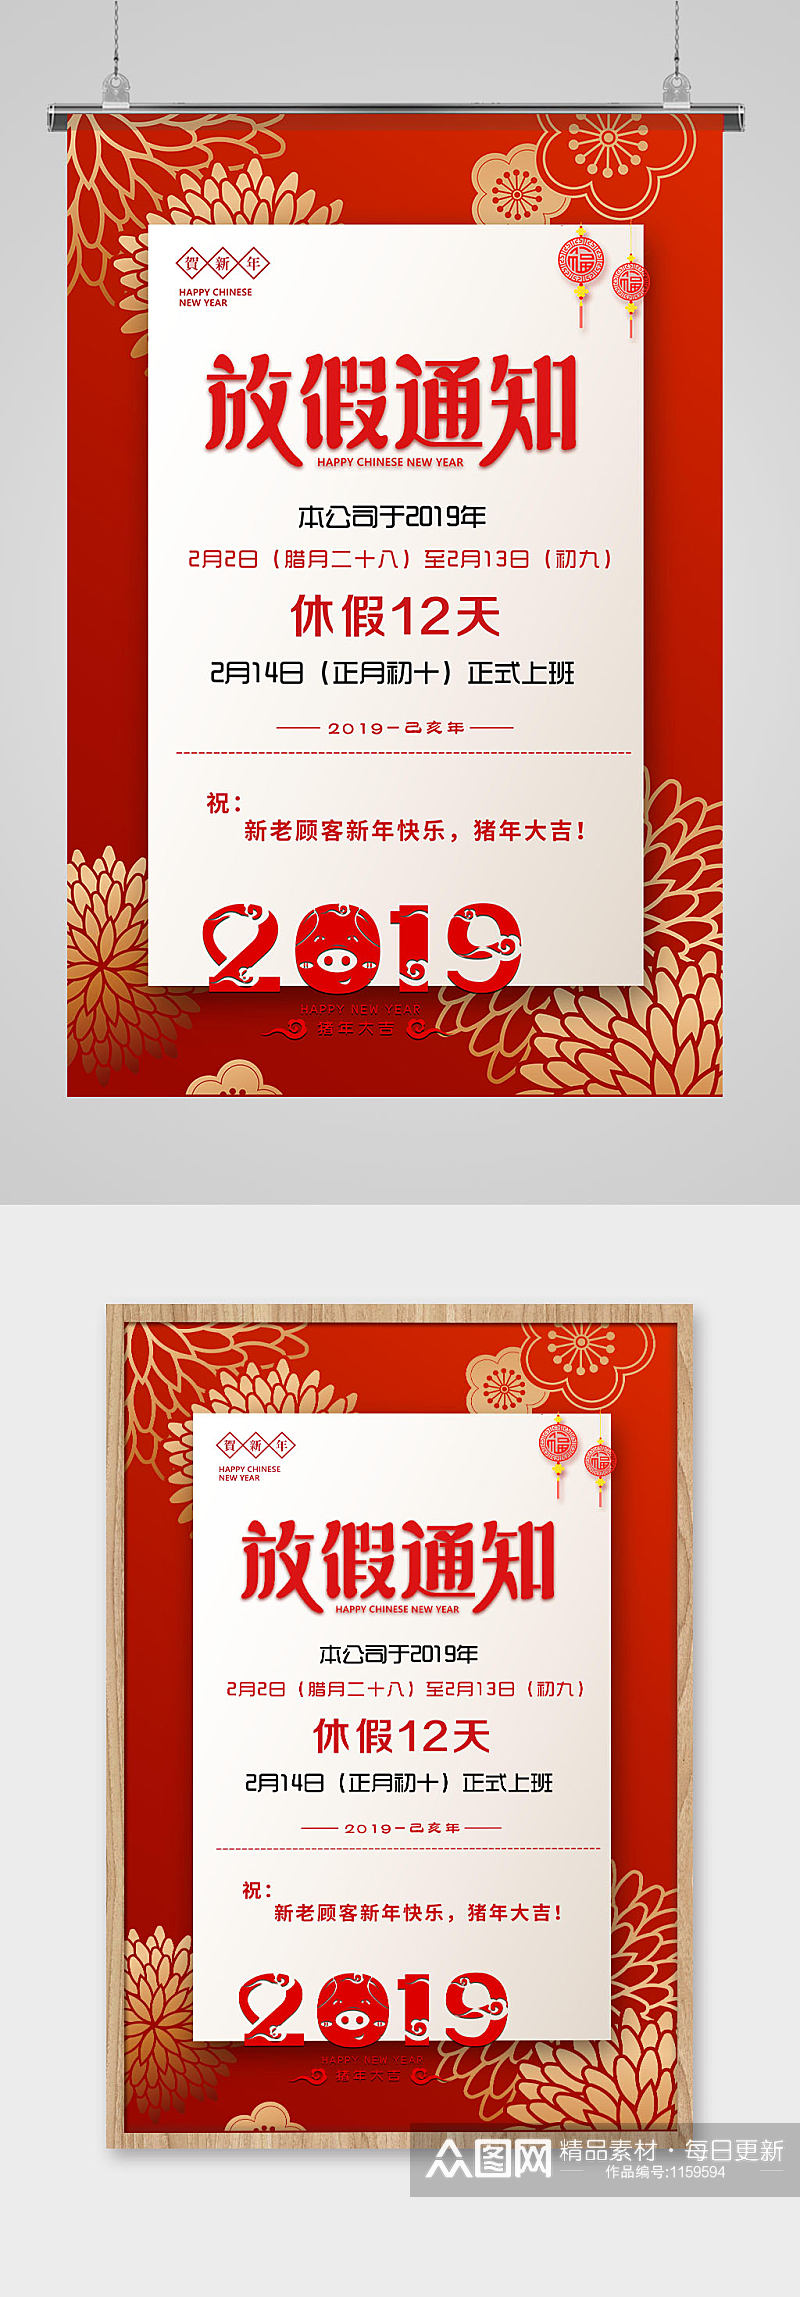 红色烟花2019新年春节放假通知海报素材